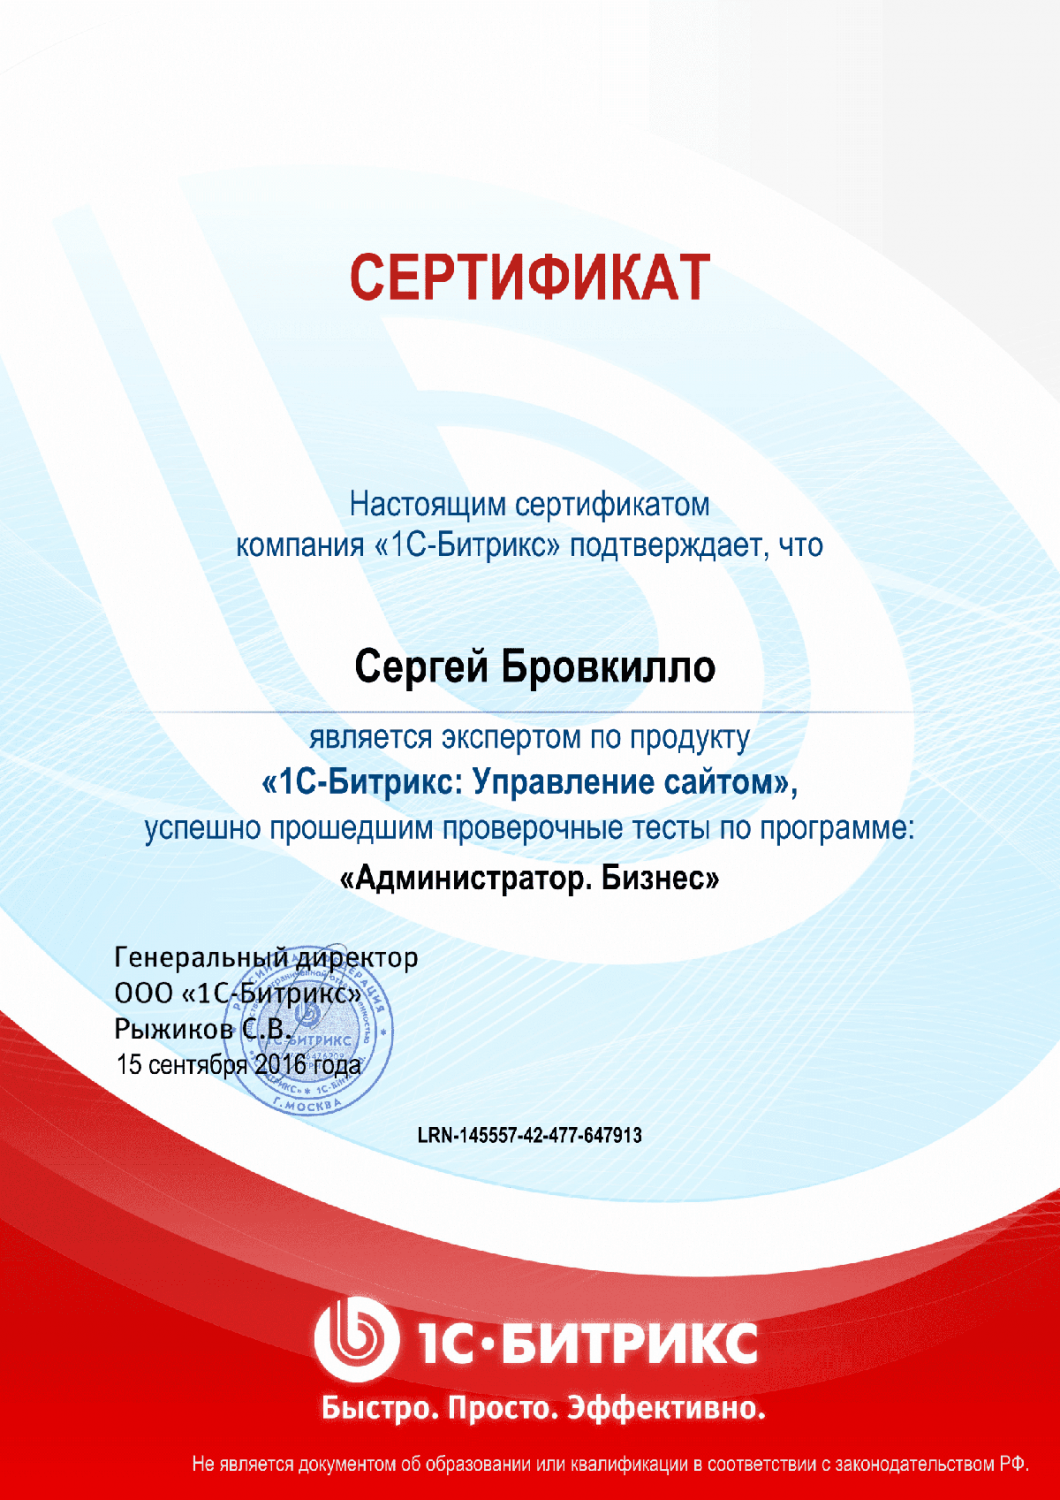 Сертификат эксперта по программе "Администратор. Бизнес" в Нижнего Новгорода